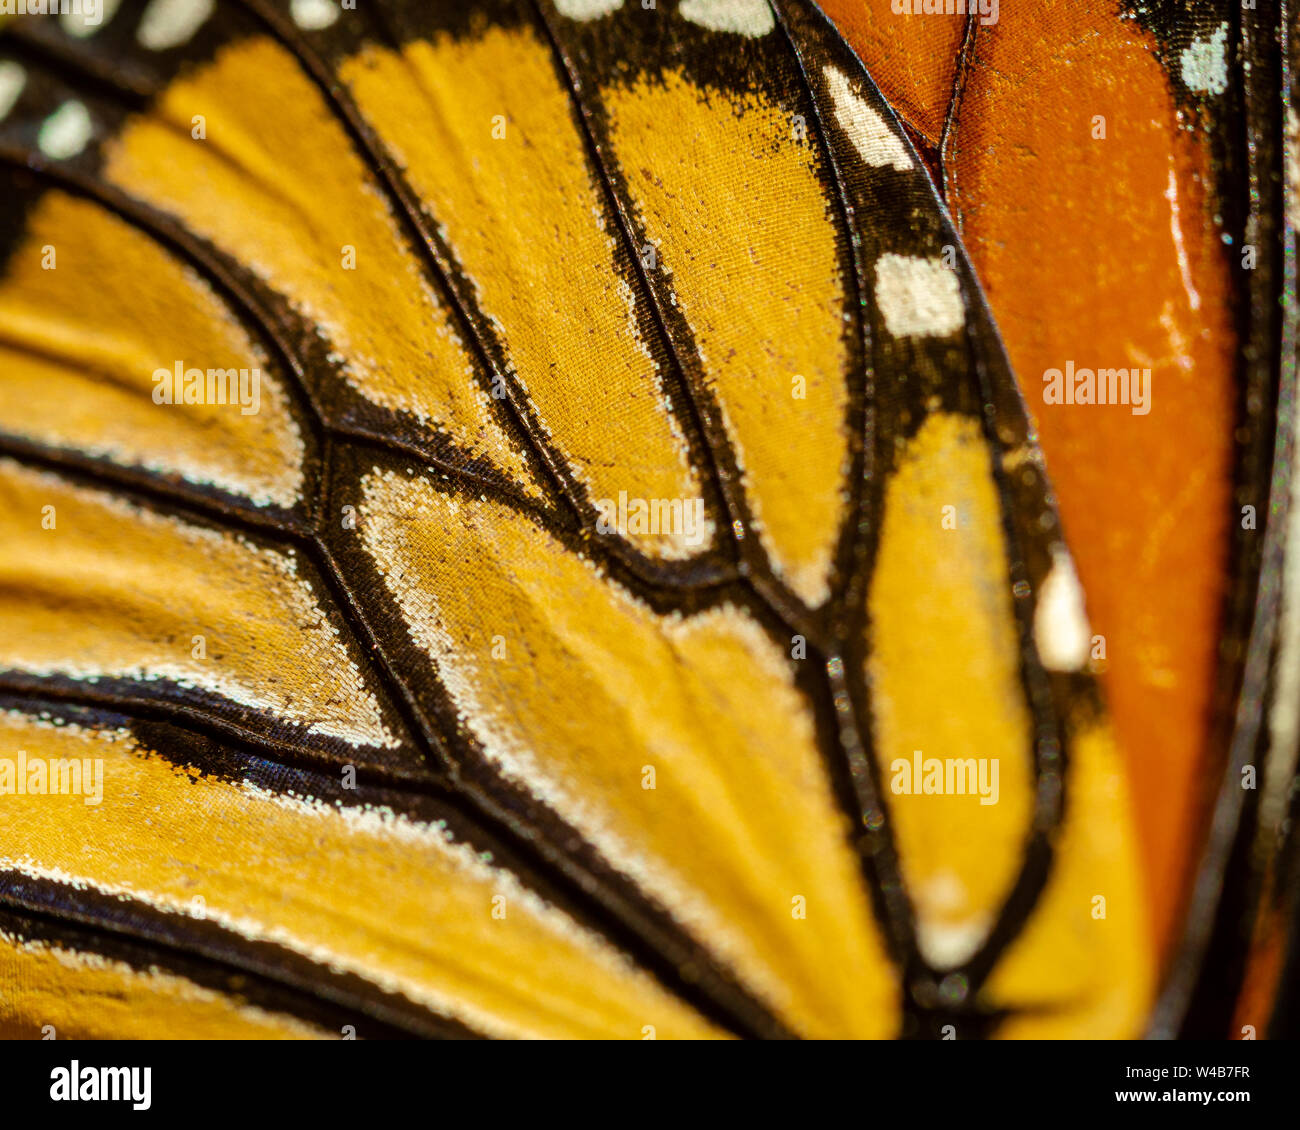 Farfalla monarca ali con colori vibranti di Arancioni e gialli e neri Foto Stock